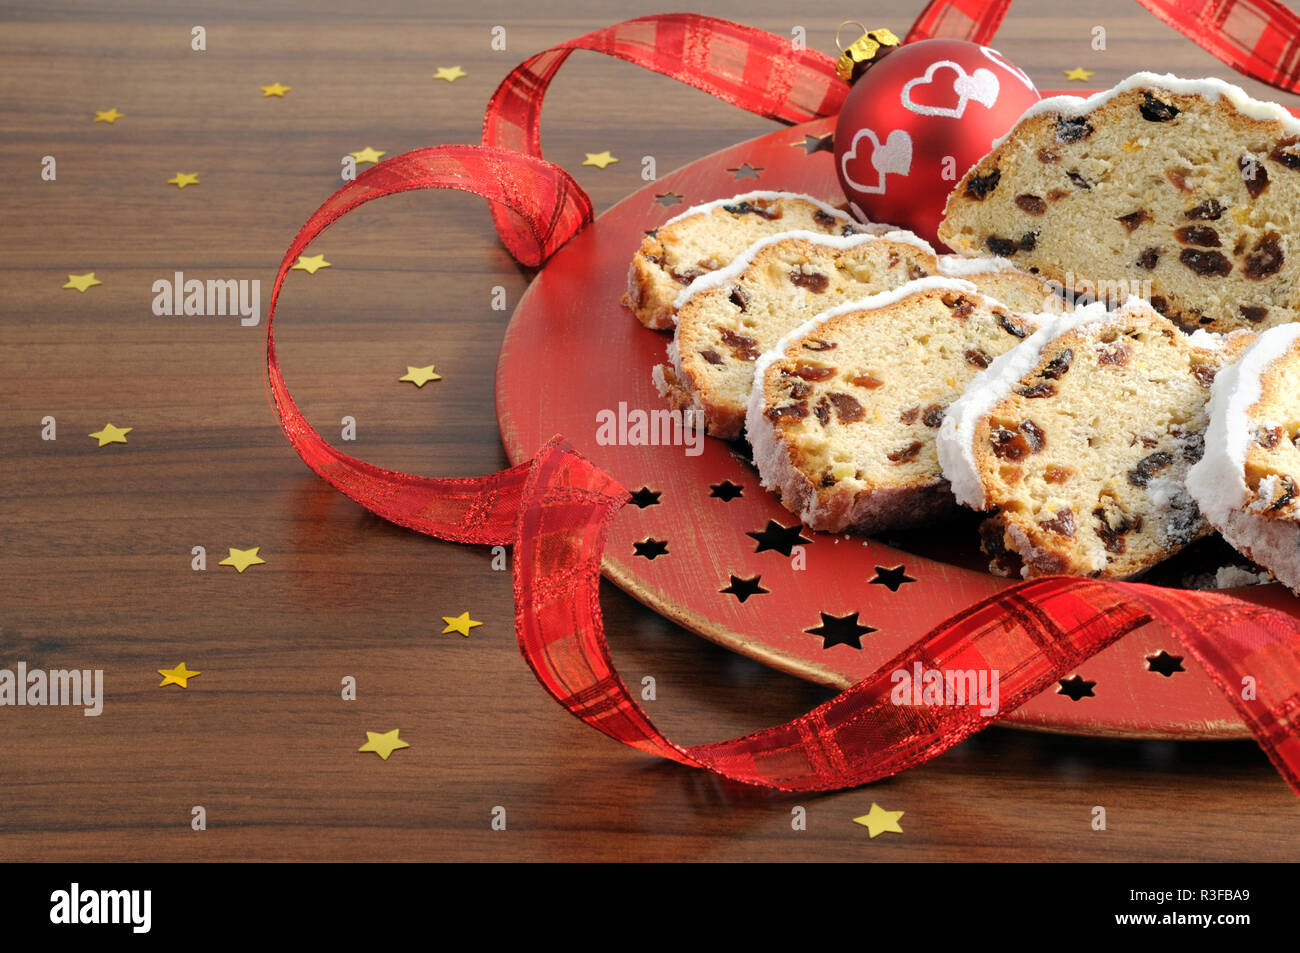 Stollen de Noël gâteau de fruit avec du sucre en poudre sur la table avec un ruban rouge. gâteau de Noël traditionnel allemand. Banque D'Images